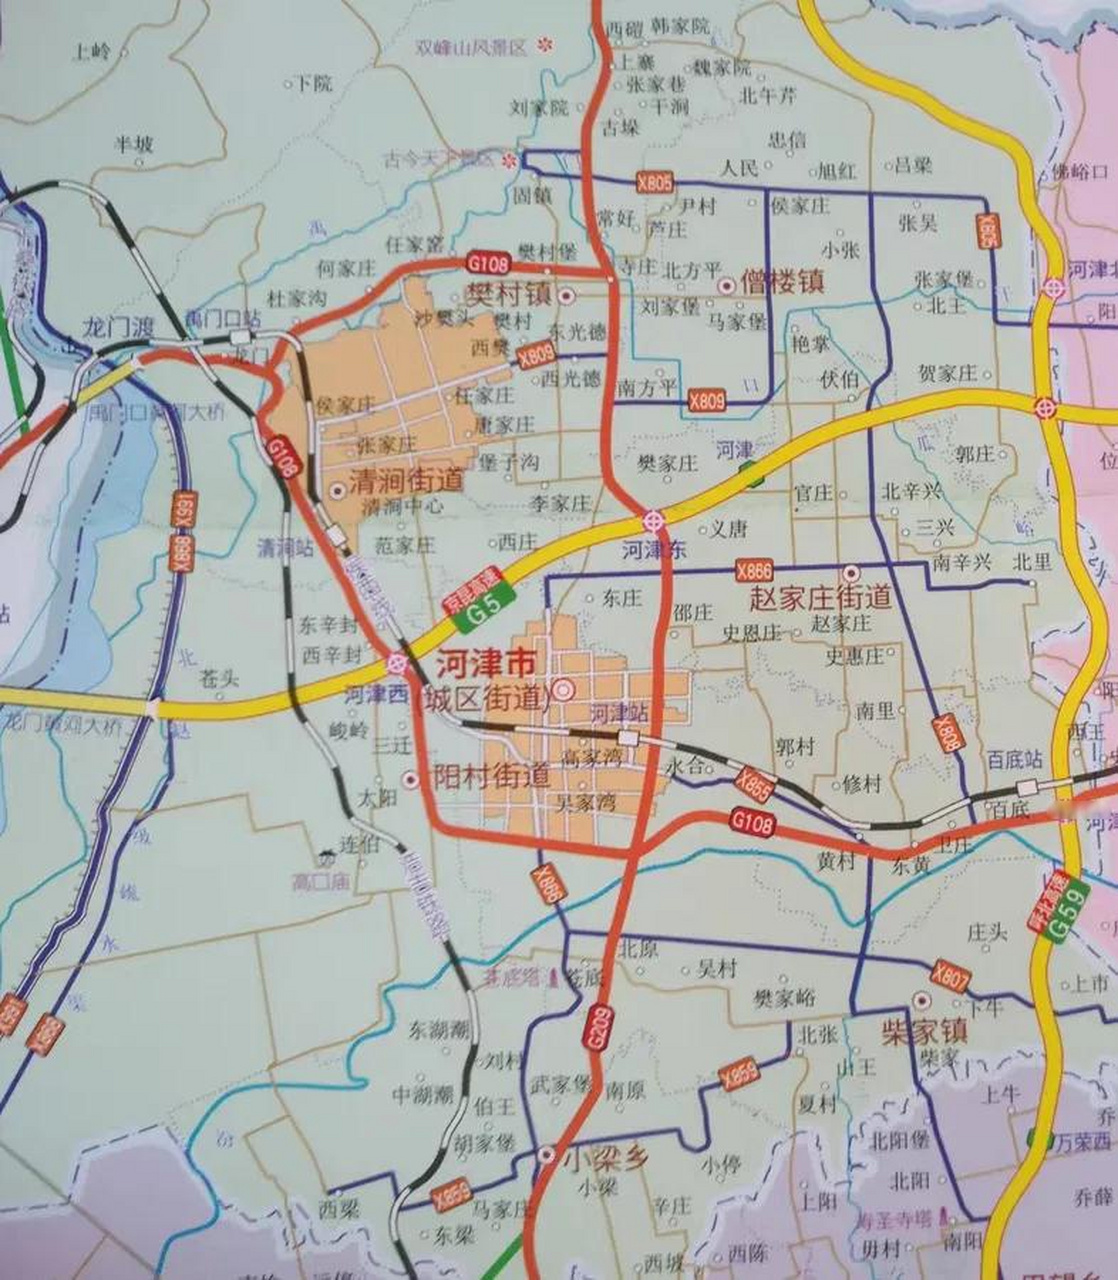 山西省河津市下辖4个街道,3个镇,2个乡,市区主要在城区街道,阳村街道